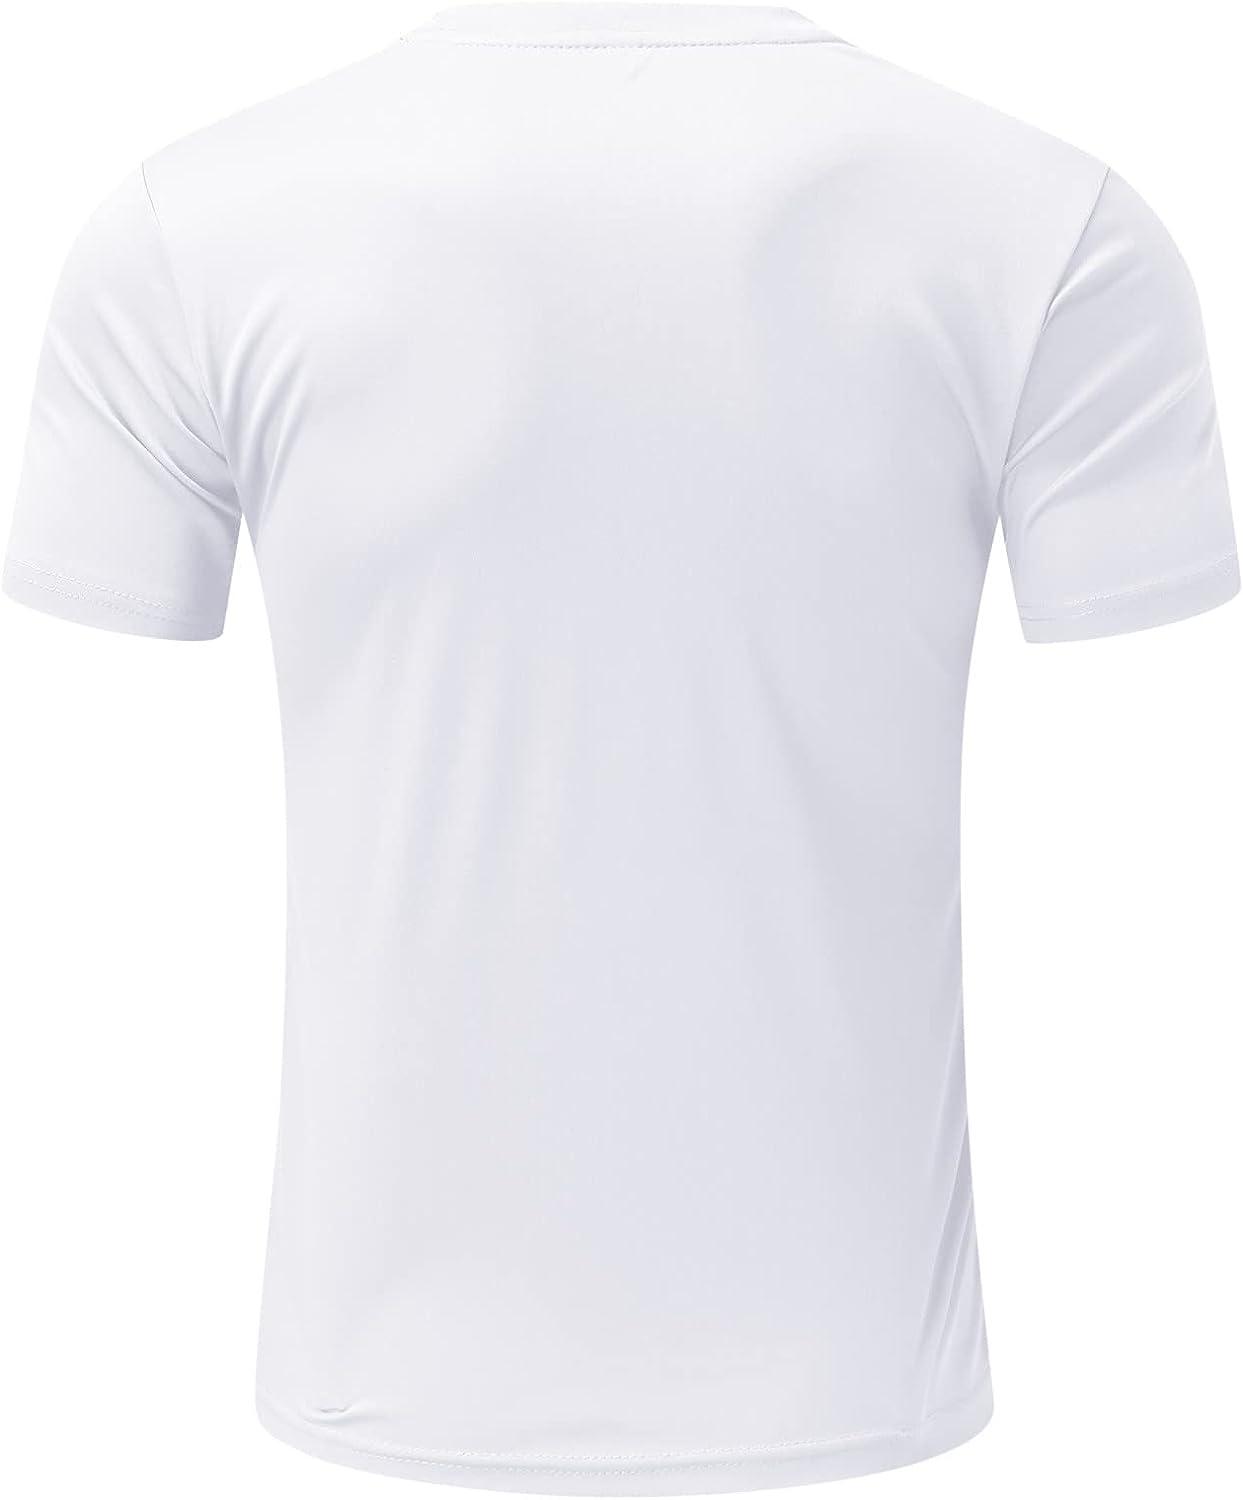 Women's Sports Jersey Shirt short Sleeve Outdoor T-shirt Cool back design  Gym Yoga Top Fitness Running Shirts Women Sport Tees